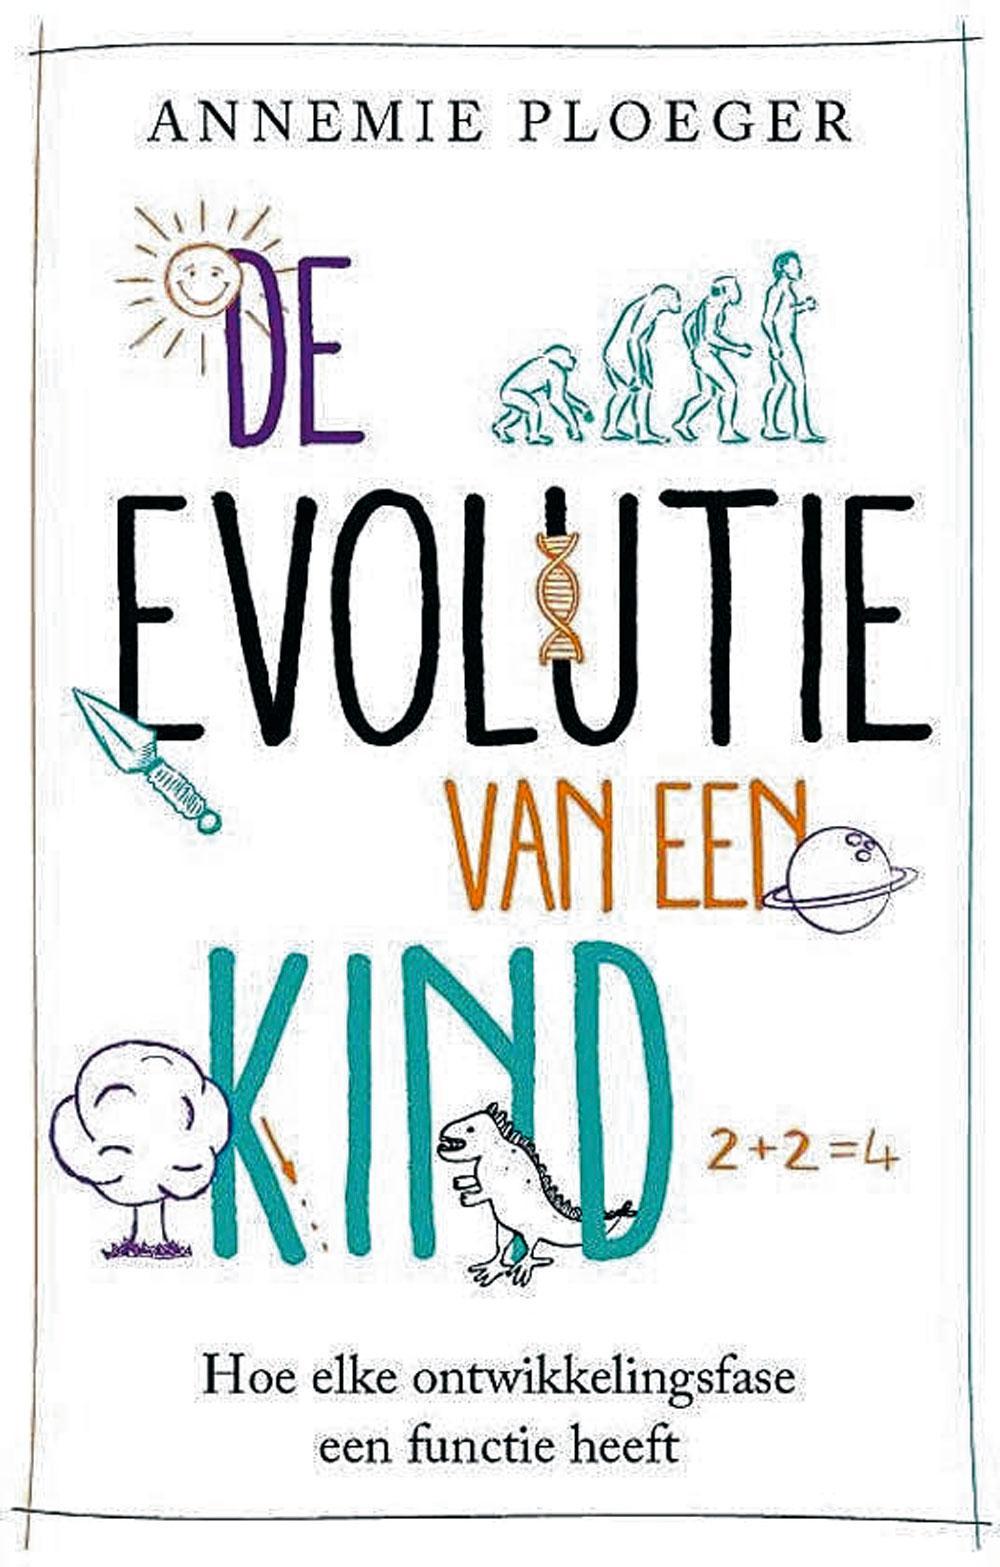 De evolutie van een kind. Annemie Ploeger, Uitgeverij Nieuwezijds, 256 blz., ISBN 9789057124976